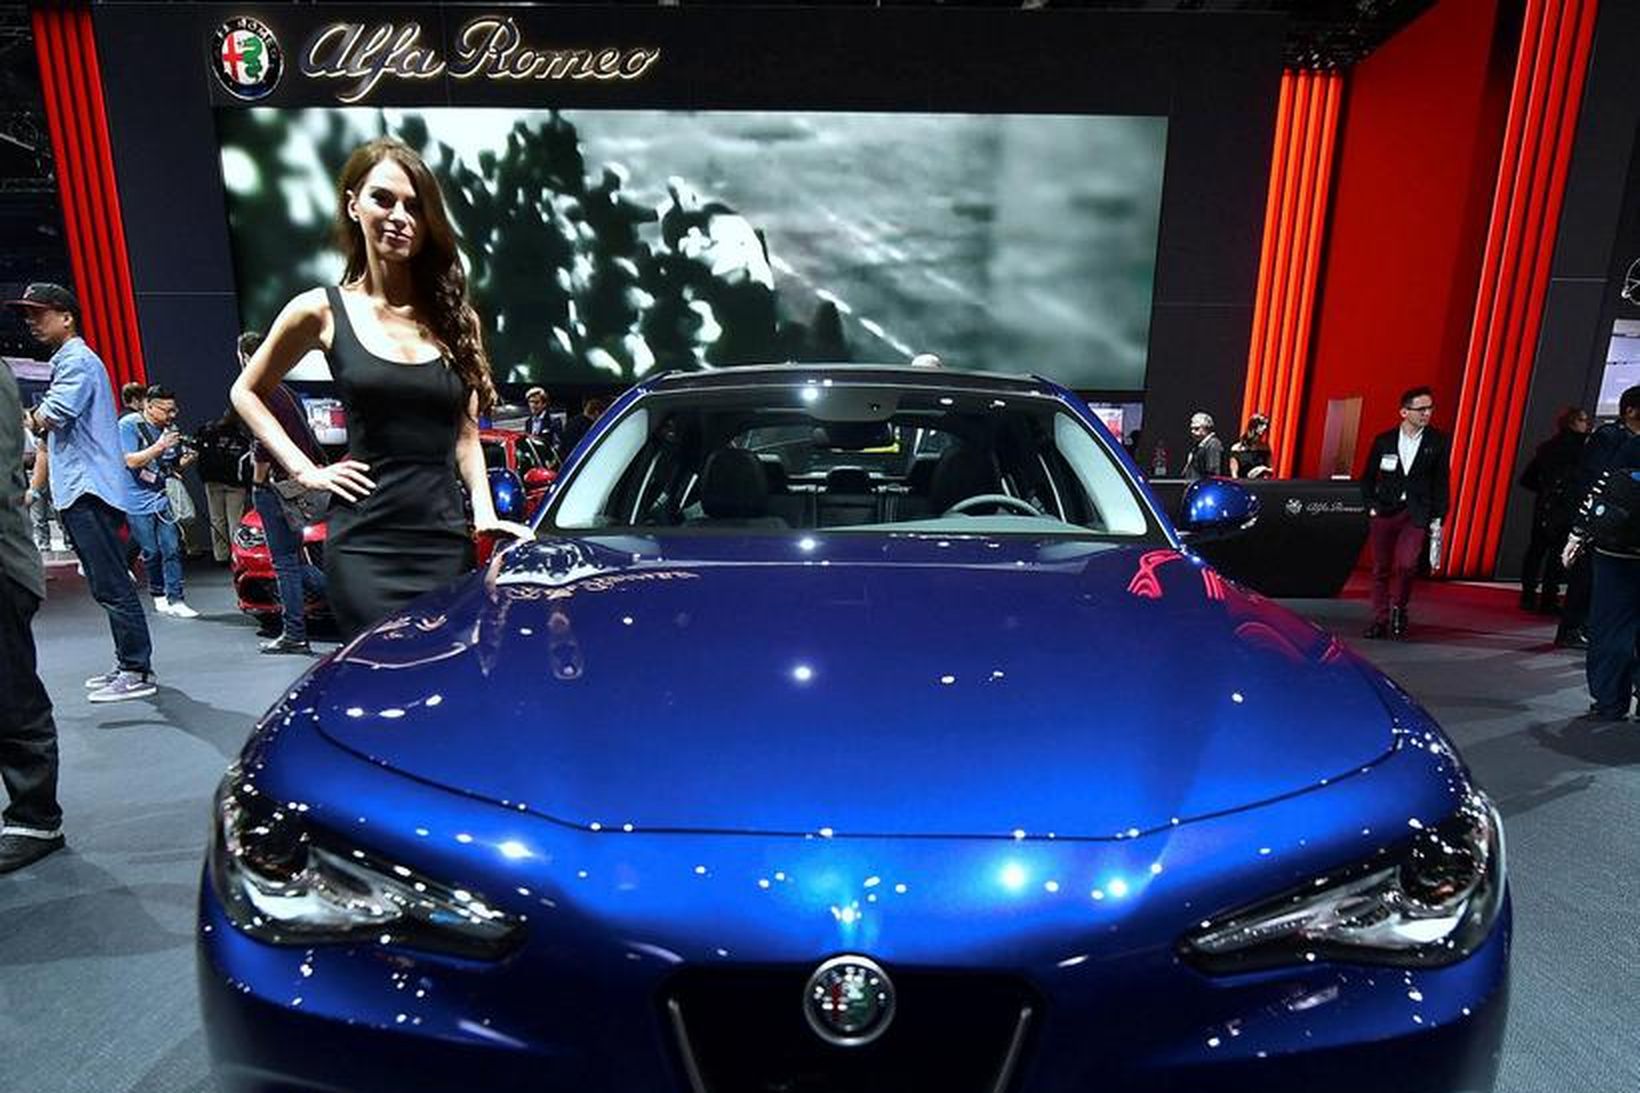 Hin nýja útgáfa af Alfa Romeo Giulia á bílasýningunni í …